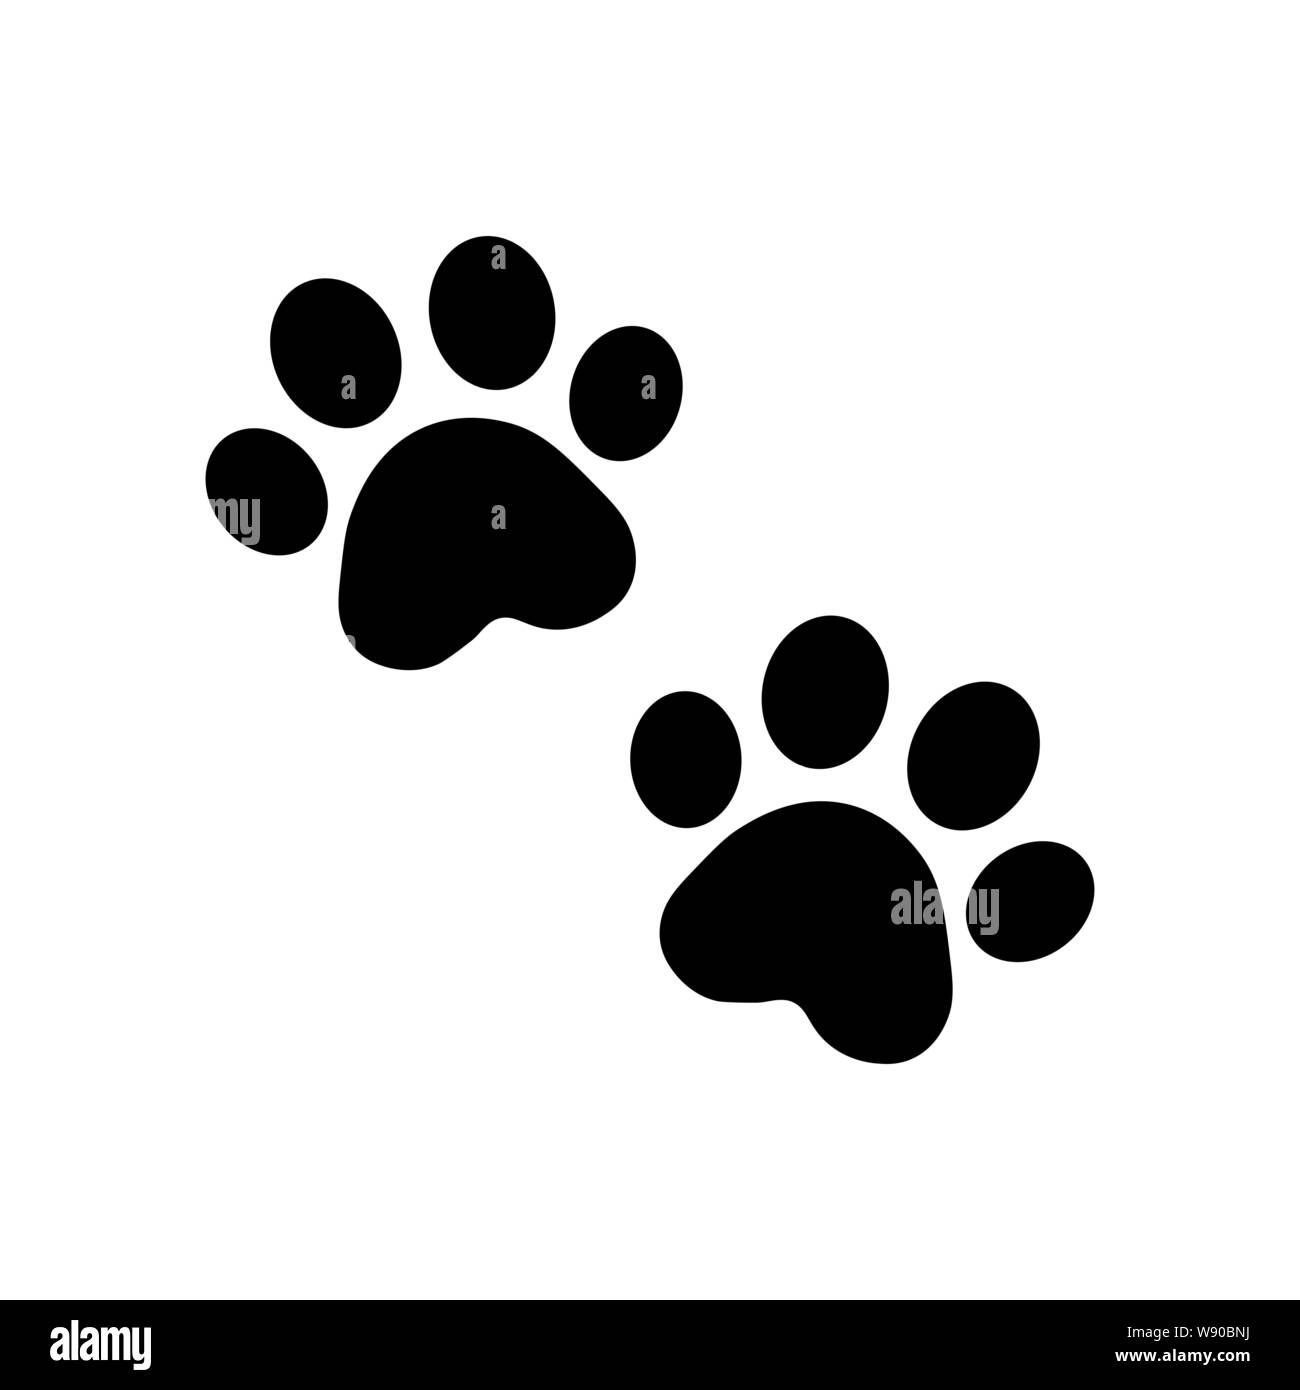 https://c8.alamy.com/compit/w90bnj/zampa-del-cane-vettore-icona-di-impronta-logo-bulldog-francese-cucciolo-gatto-gattino-cartoon-segno-di-simbolo-illustrazione-doodle-vettore-w90bnj.jpg